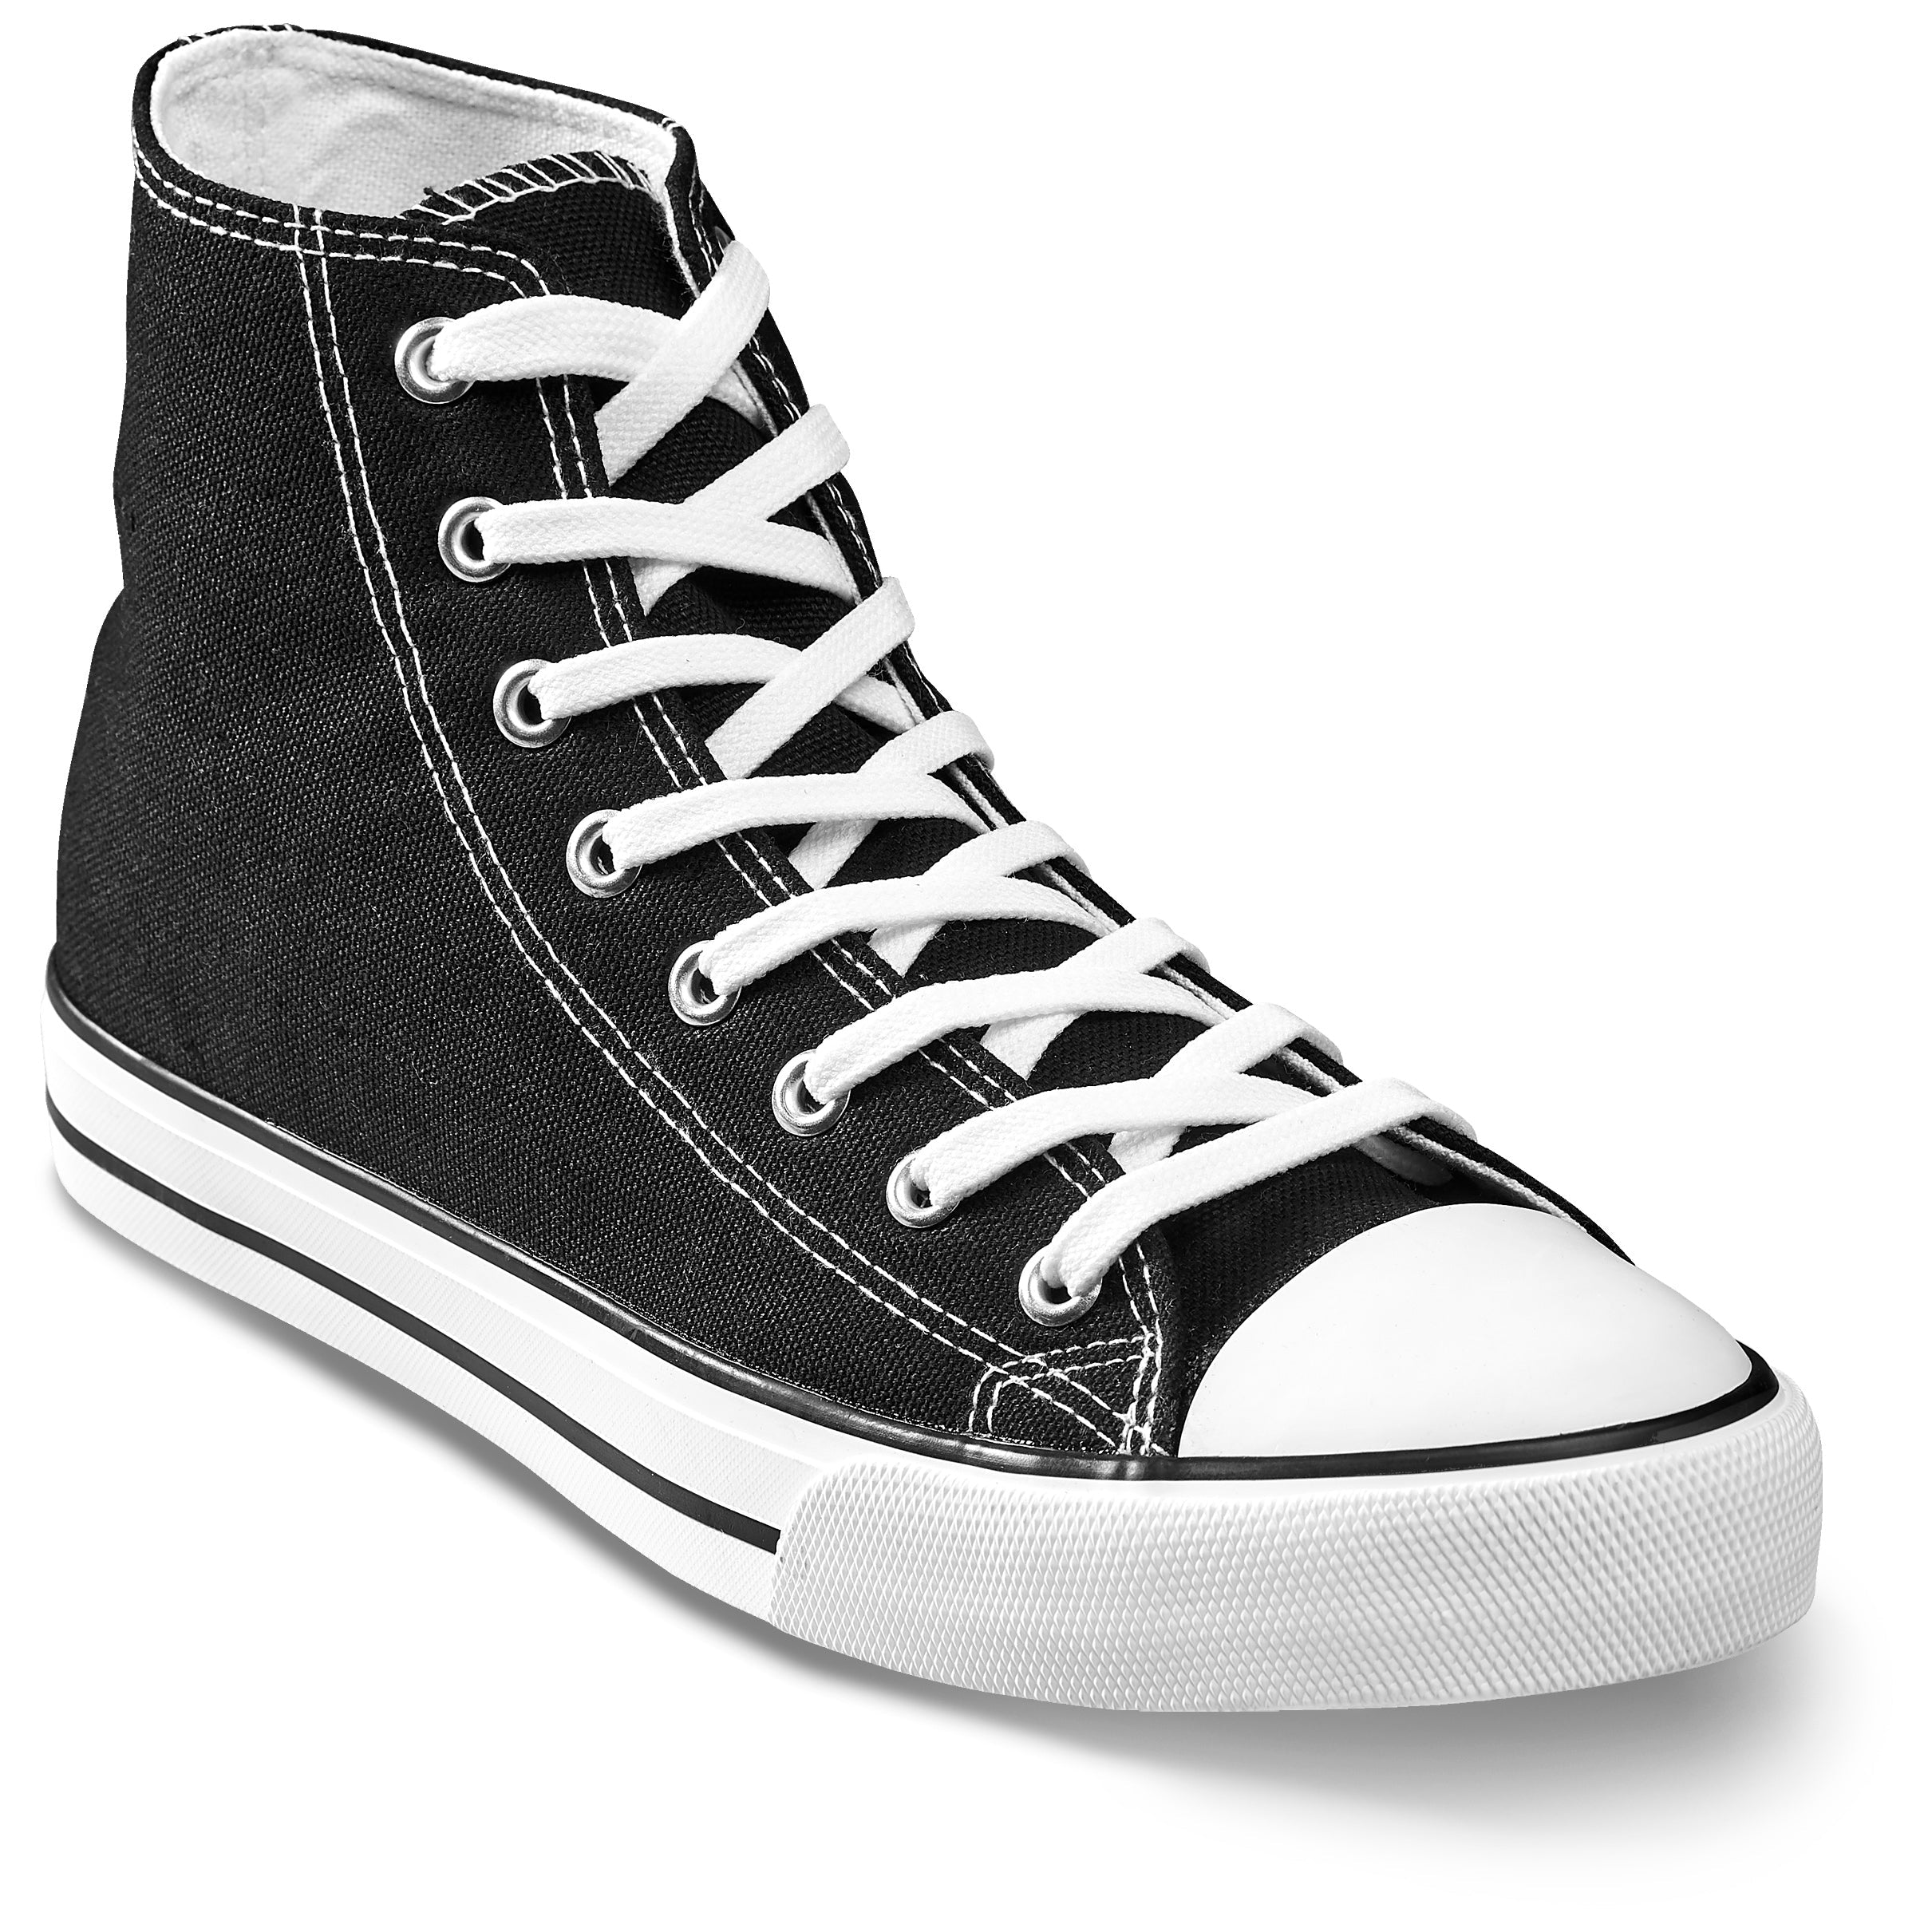 Unisex Retro High Top Canvas Sneaker-Shoes-2-Black-BL